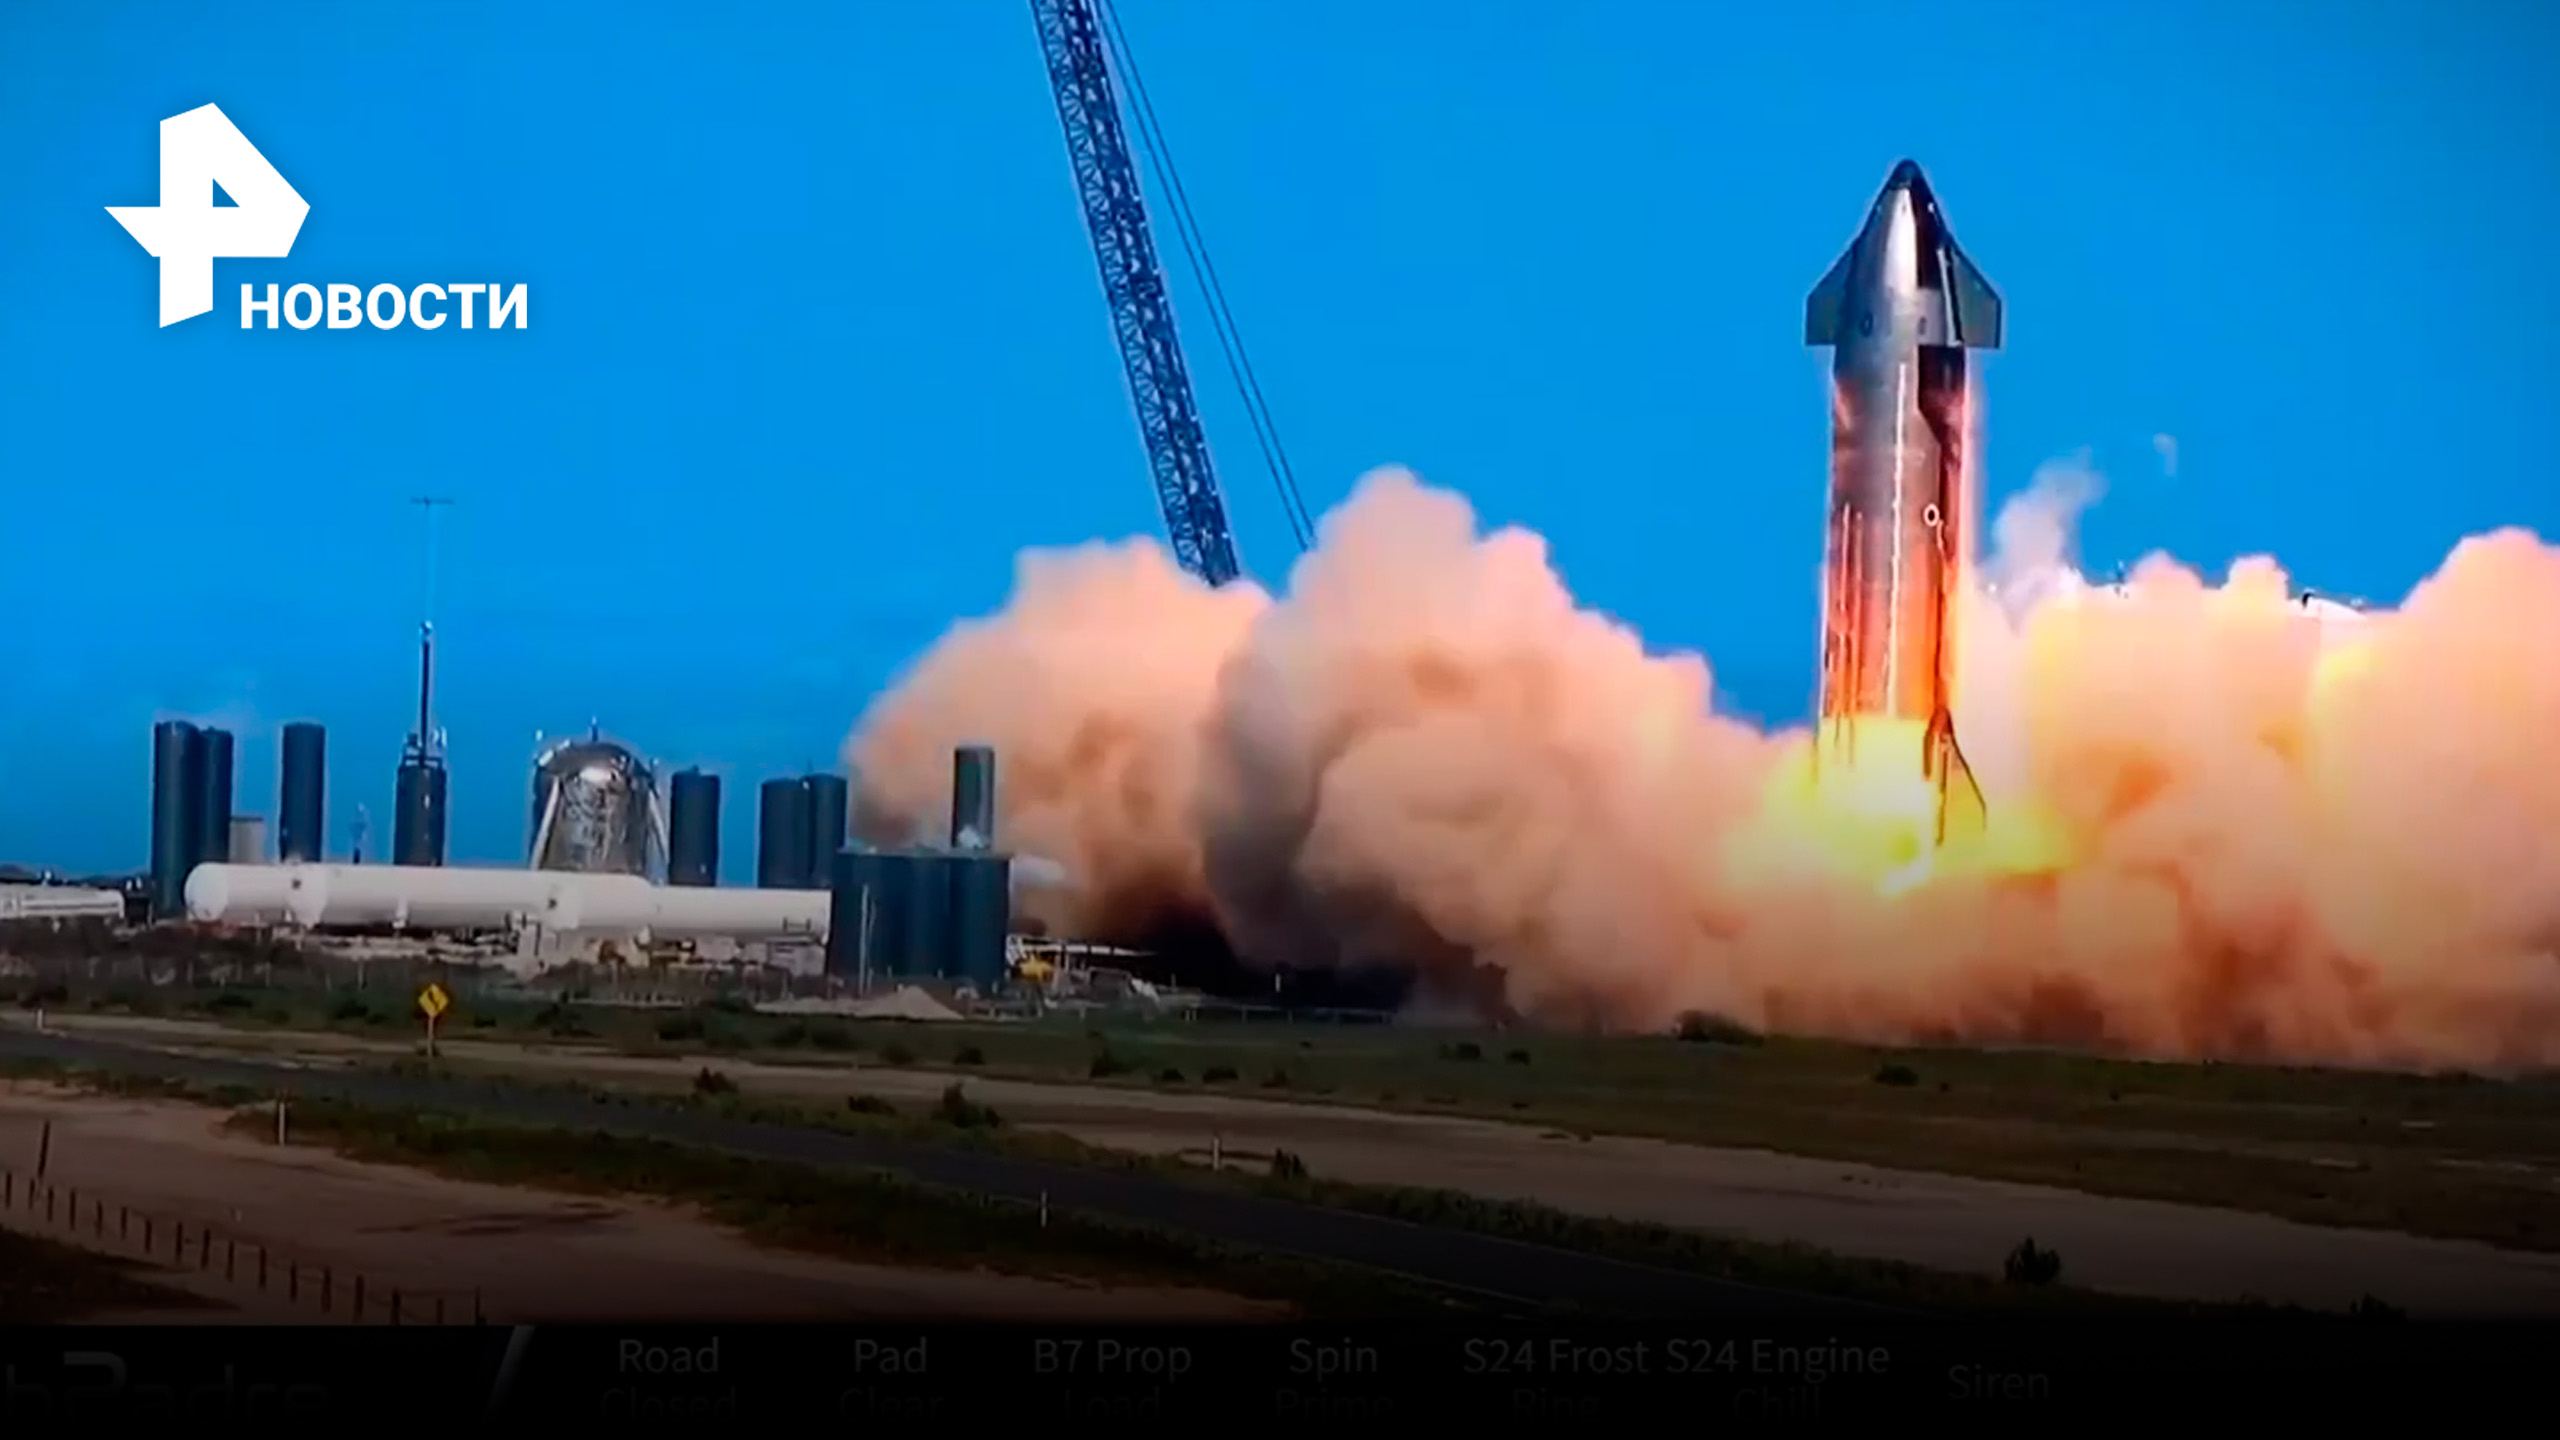 Пожаром и взрывом закончились испытания двигателей ракеты-носителя SpaceX Starship / РЕН Новости